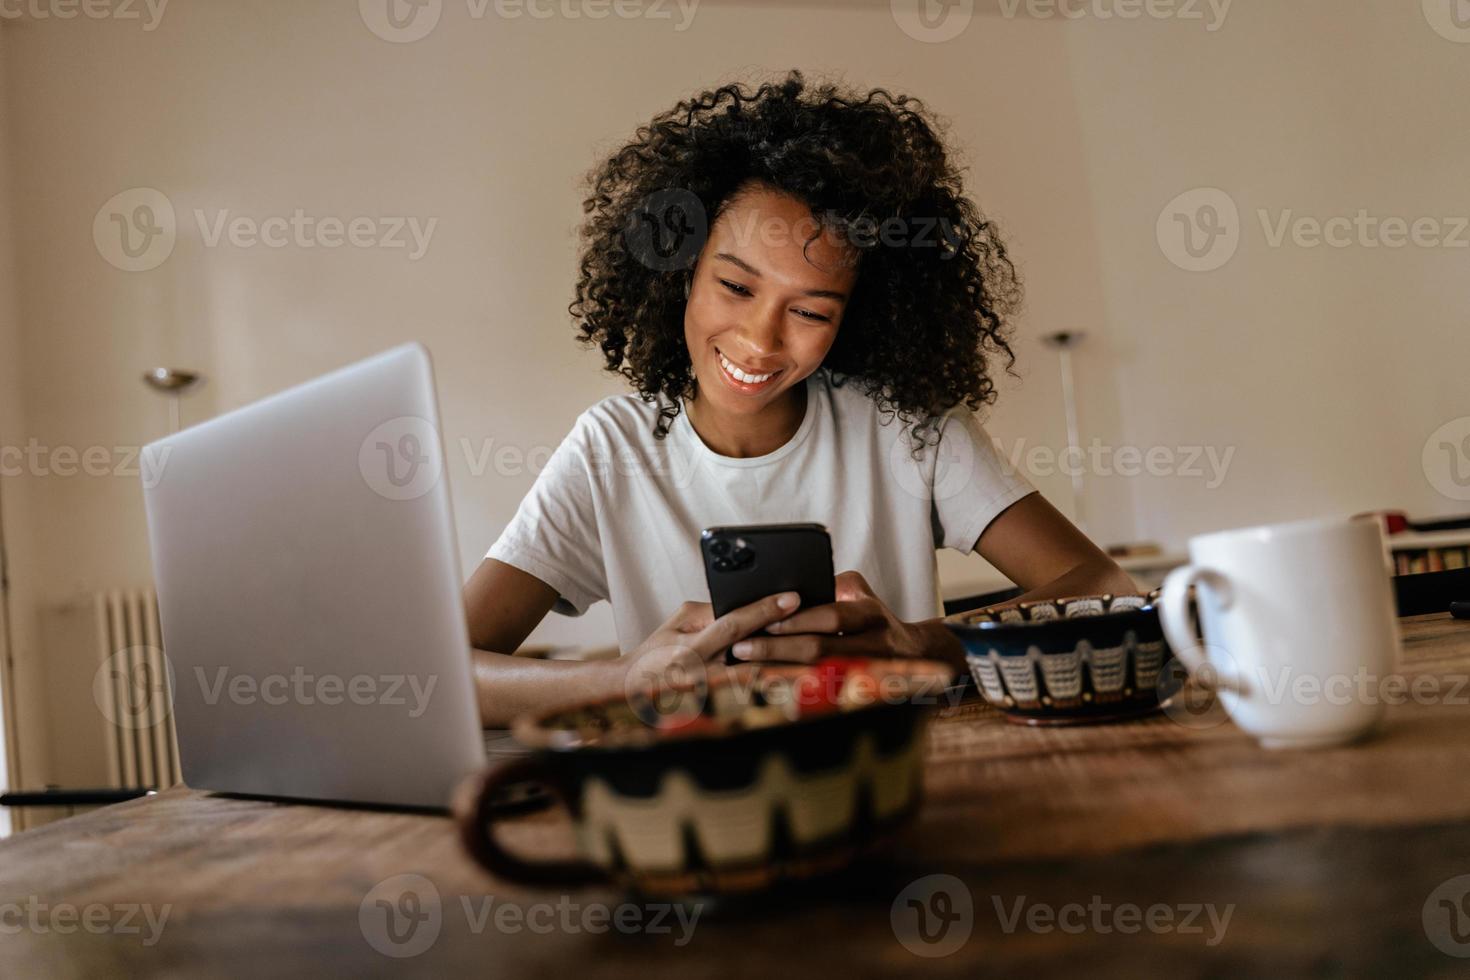 jovem negra usando telefone celular e laptop enquanto toma o café da manhã foto